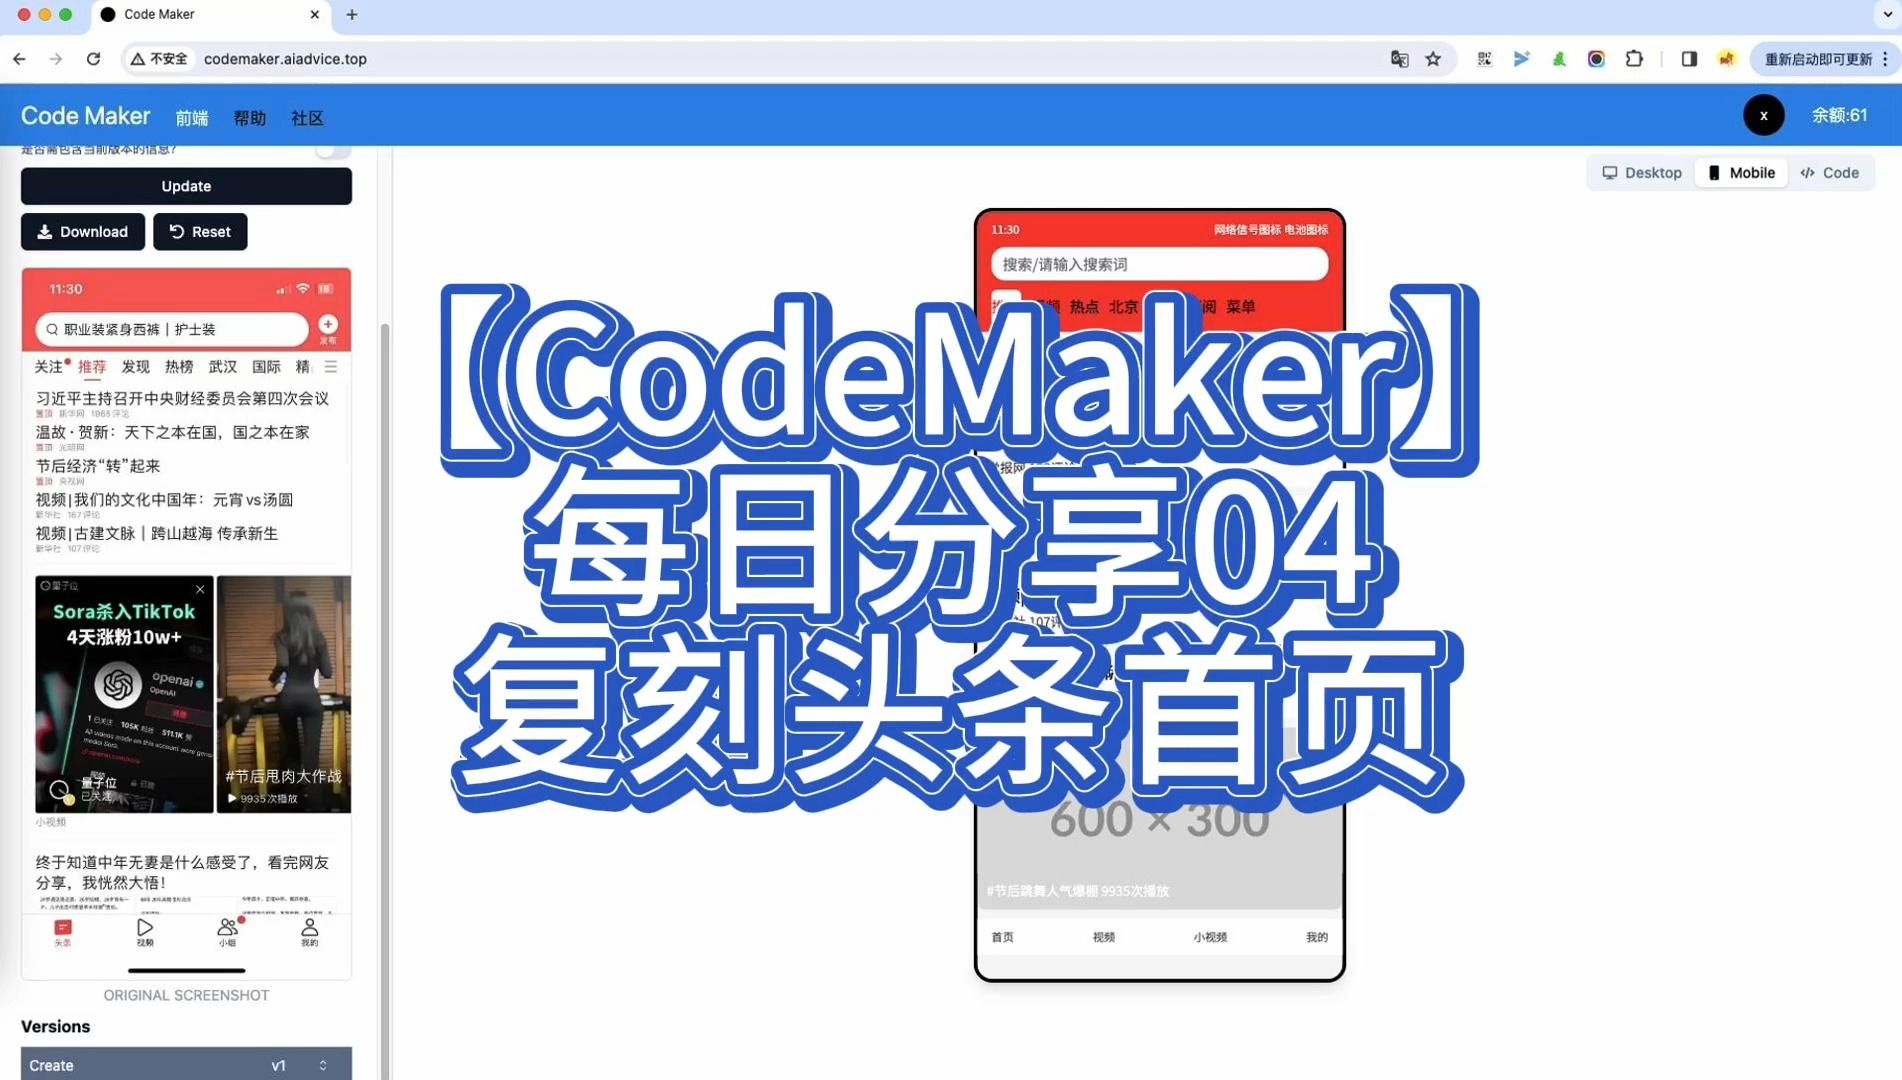 【CodeMaker】每日分享04-复刻头条首页